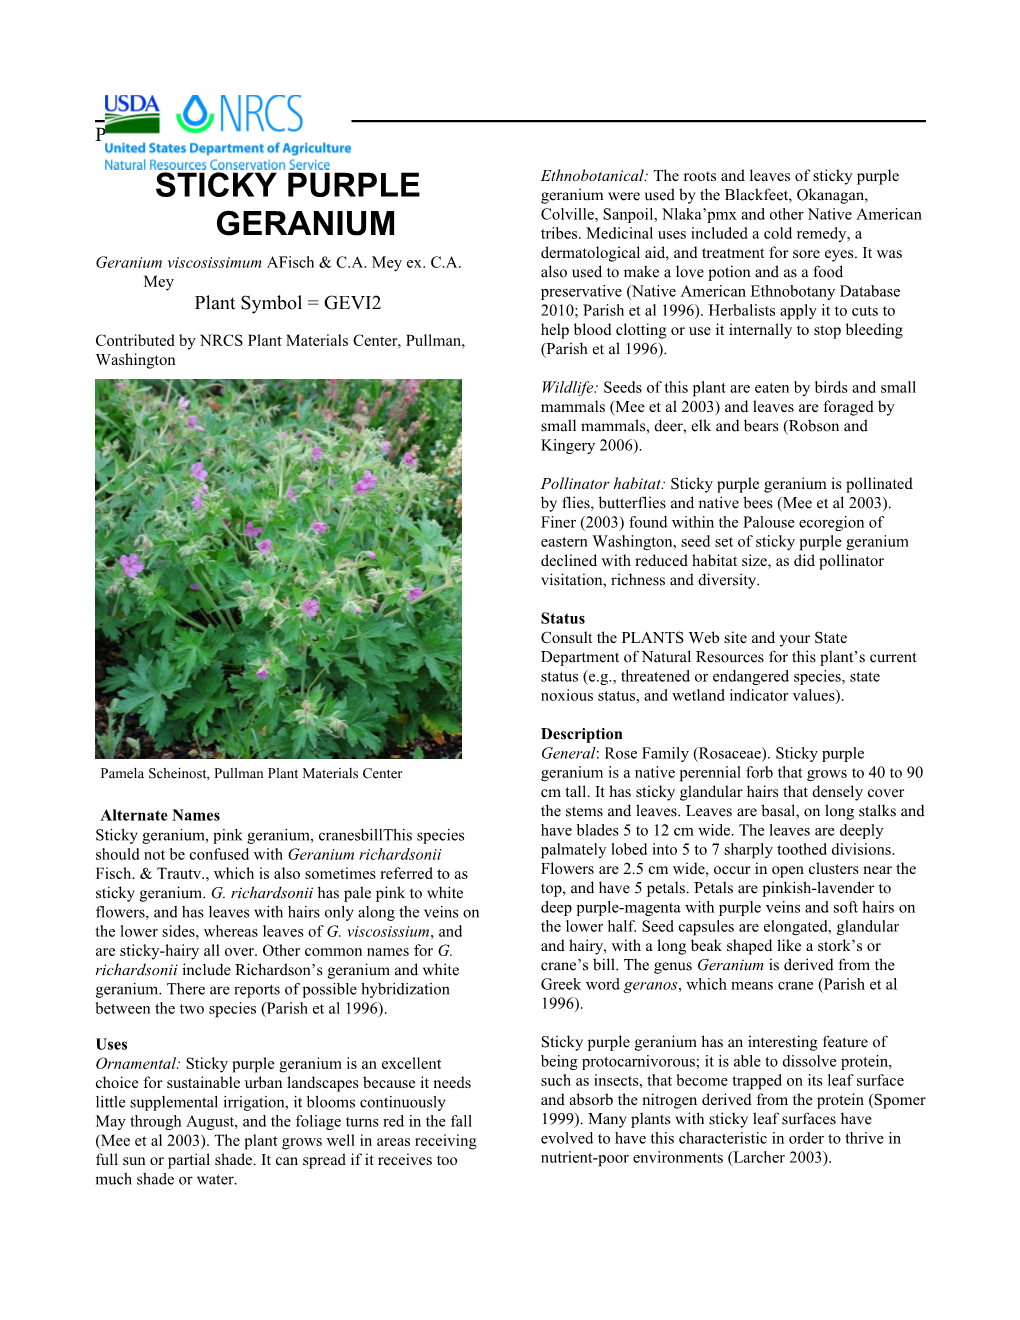 Sticky Purple Geranium Geranium Viscosissimum Plant Guide